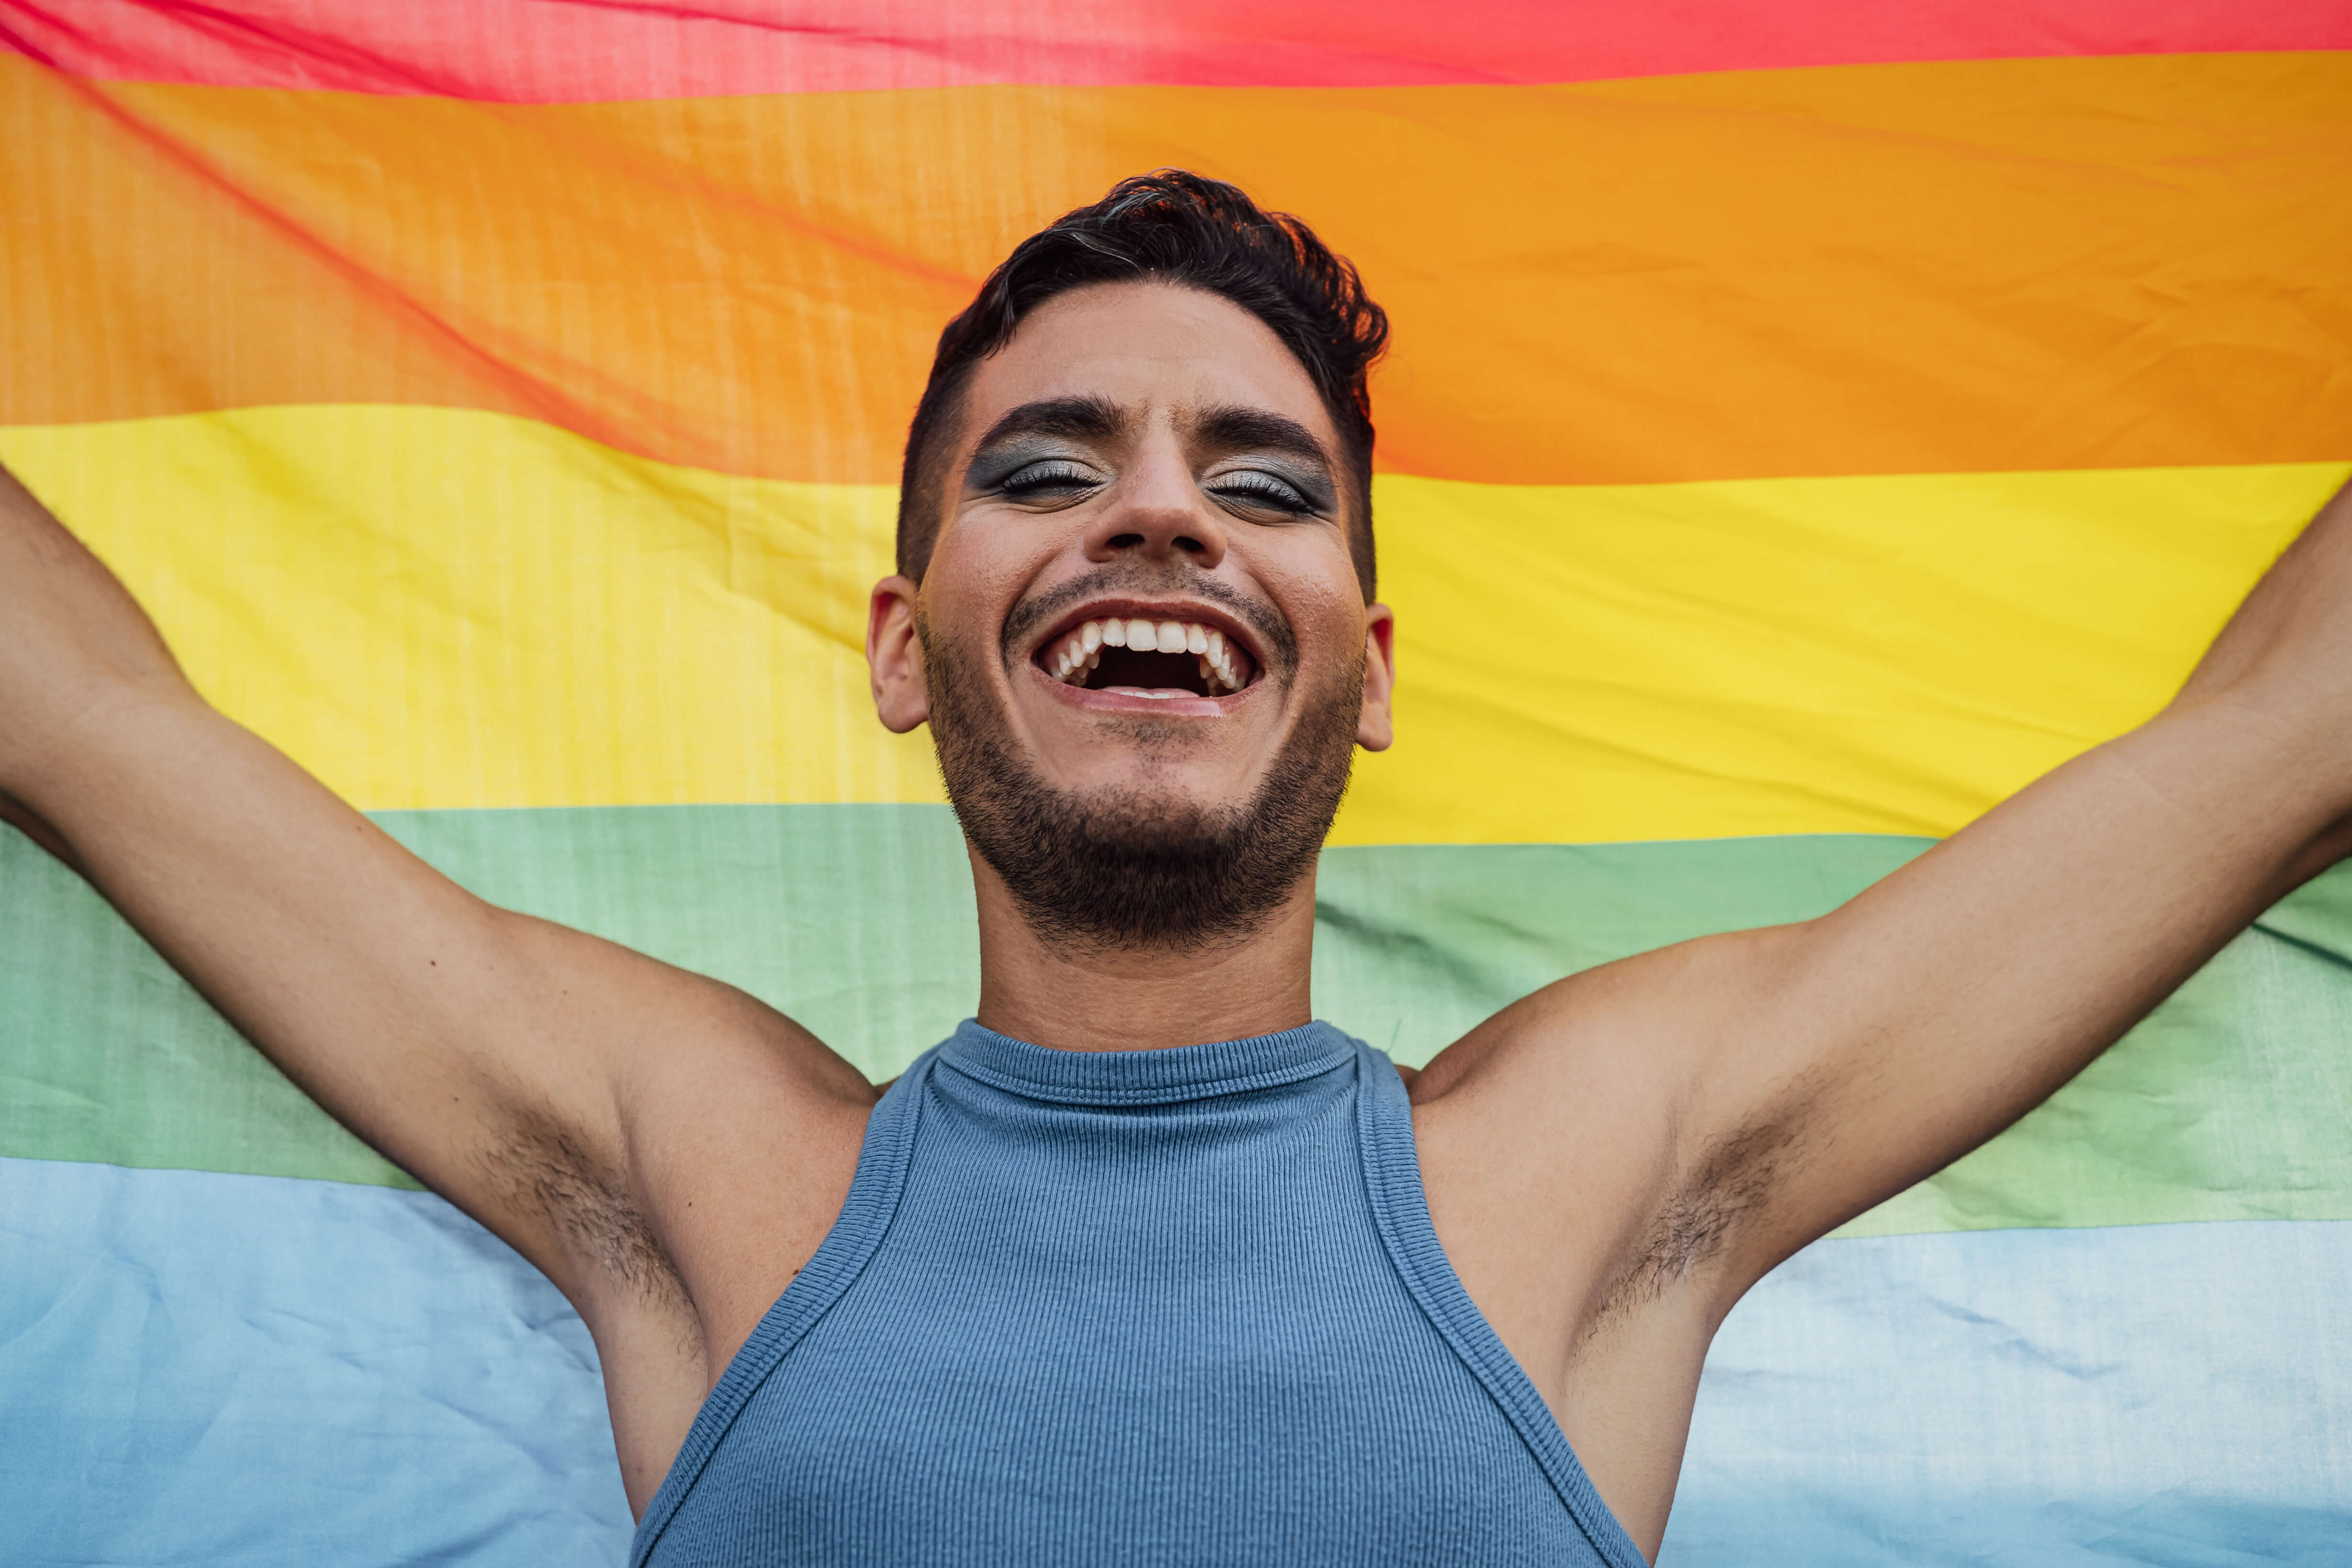 Иммиграция для ЛГБТ. Может ли получить убежище гей, который был женат на  женщине | Rubic.us